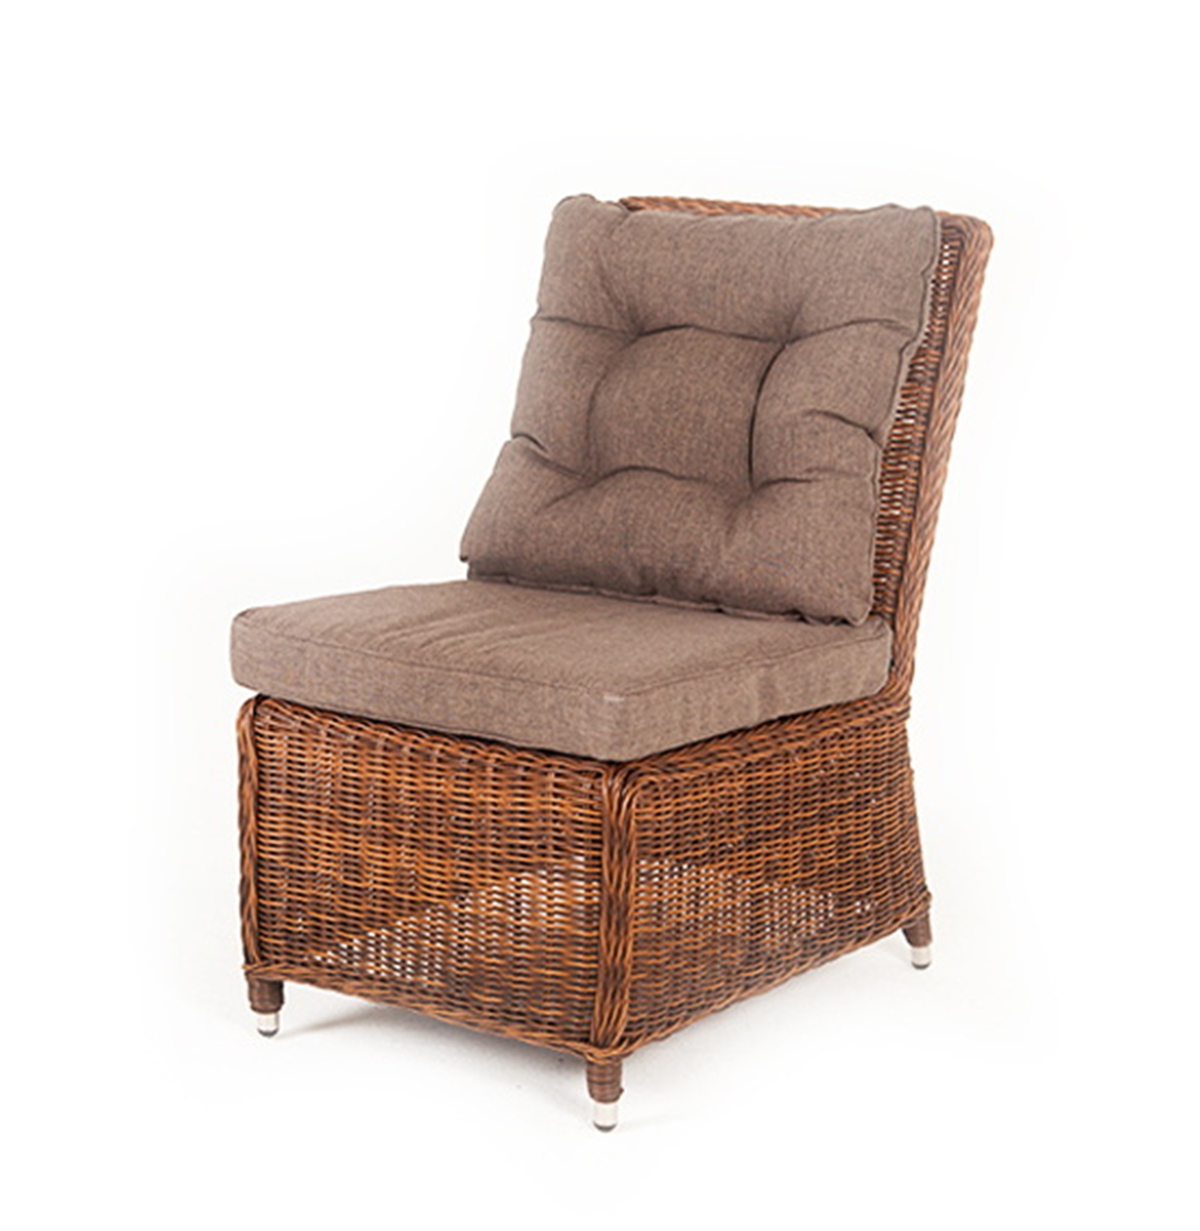 Плетеный центральный модуль дивана Бергамо Brown плетеный стул из роупа лион коричневый ткань темно серая